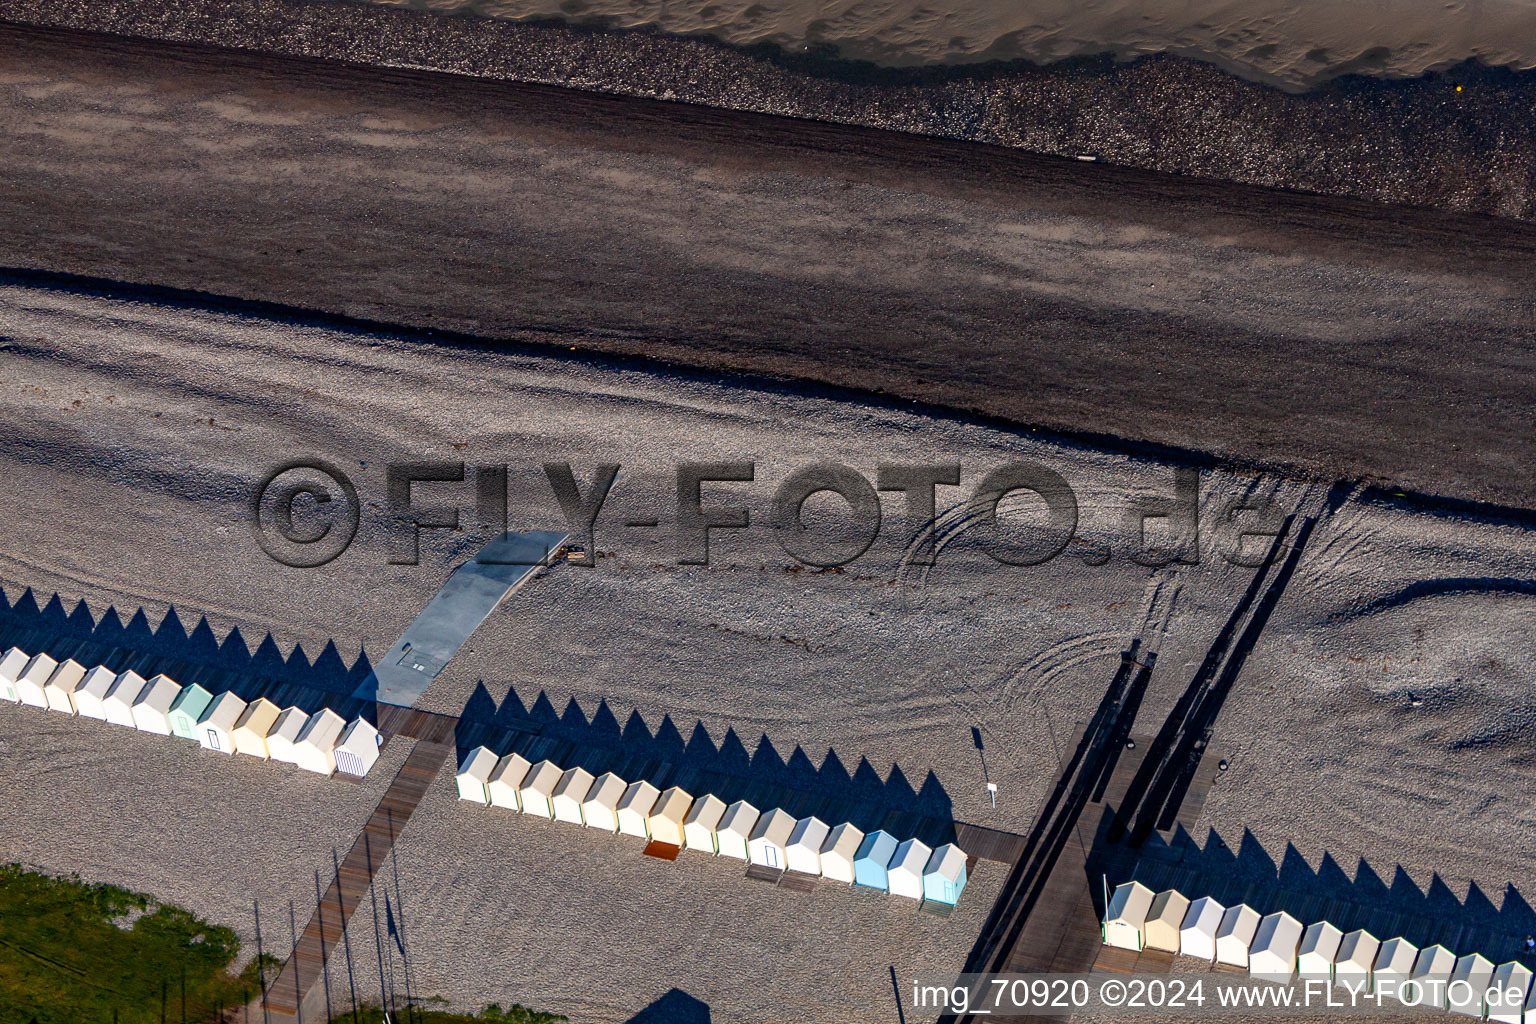 Strandhütten von Cayeux in Cayeux-sur-Mer im Bundesland Somme, Frankreich aus der Luft